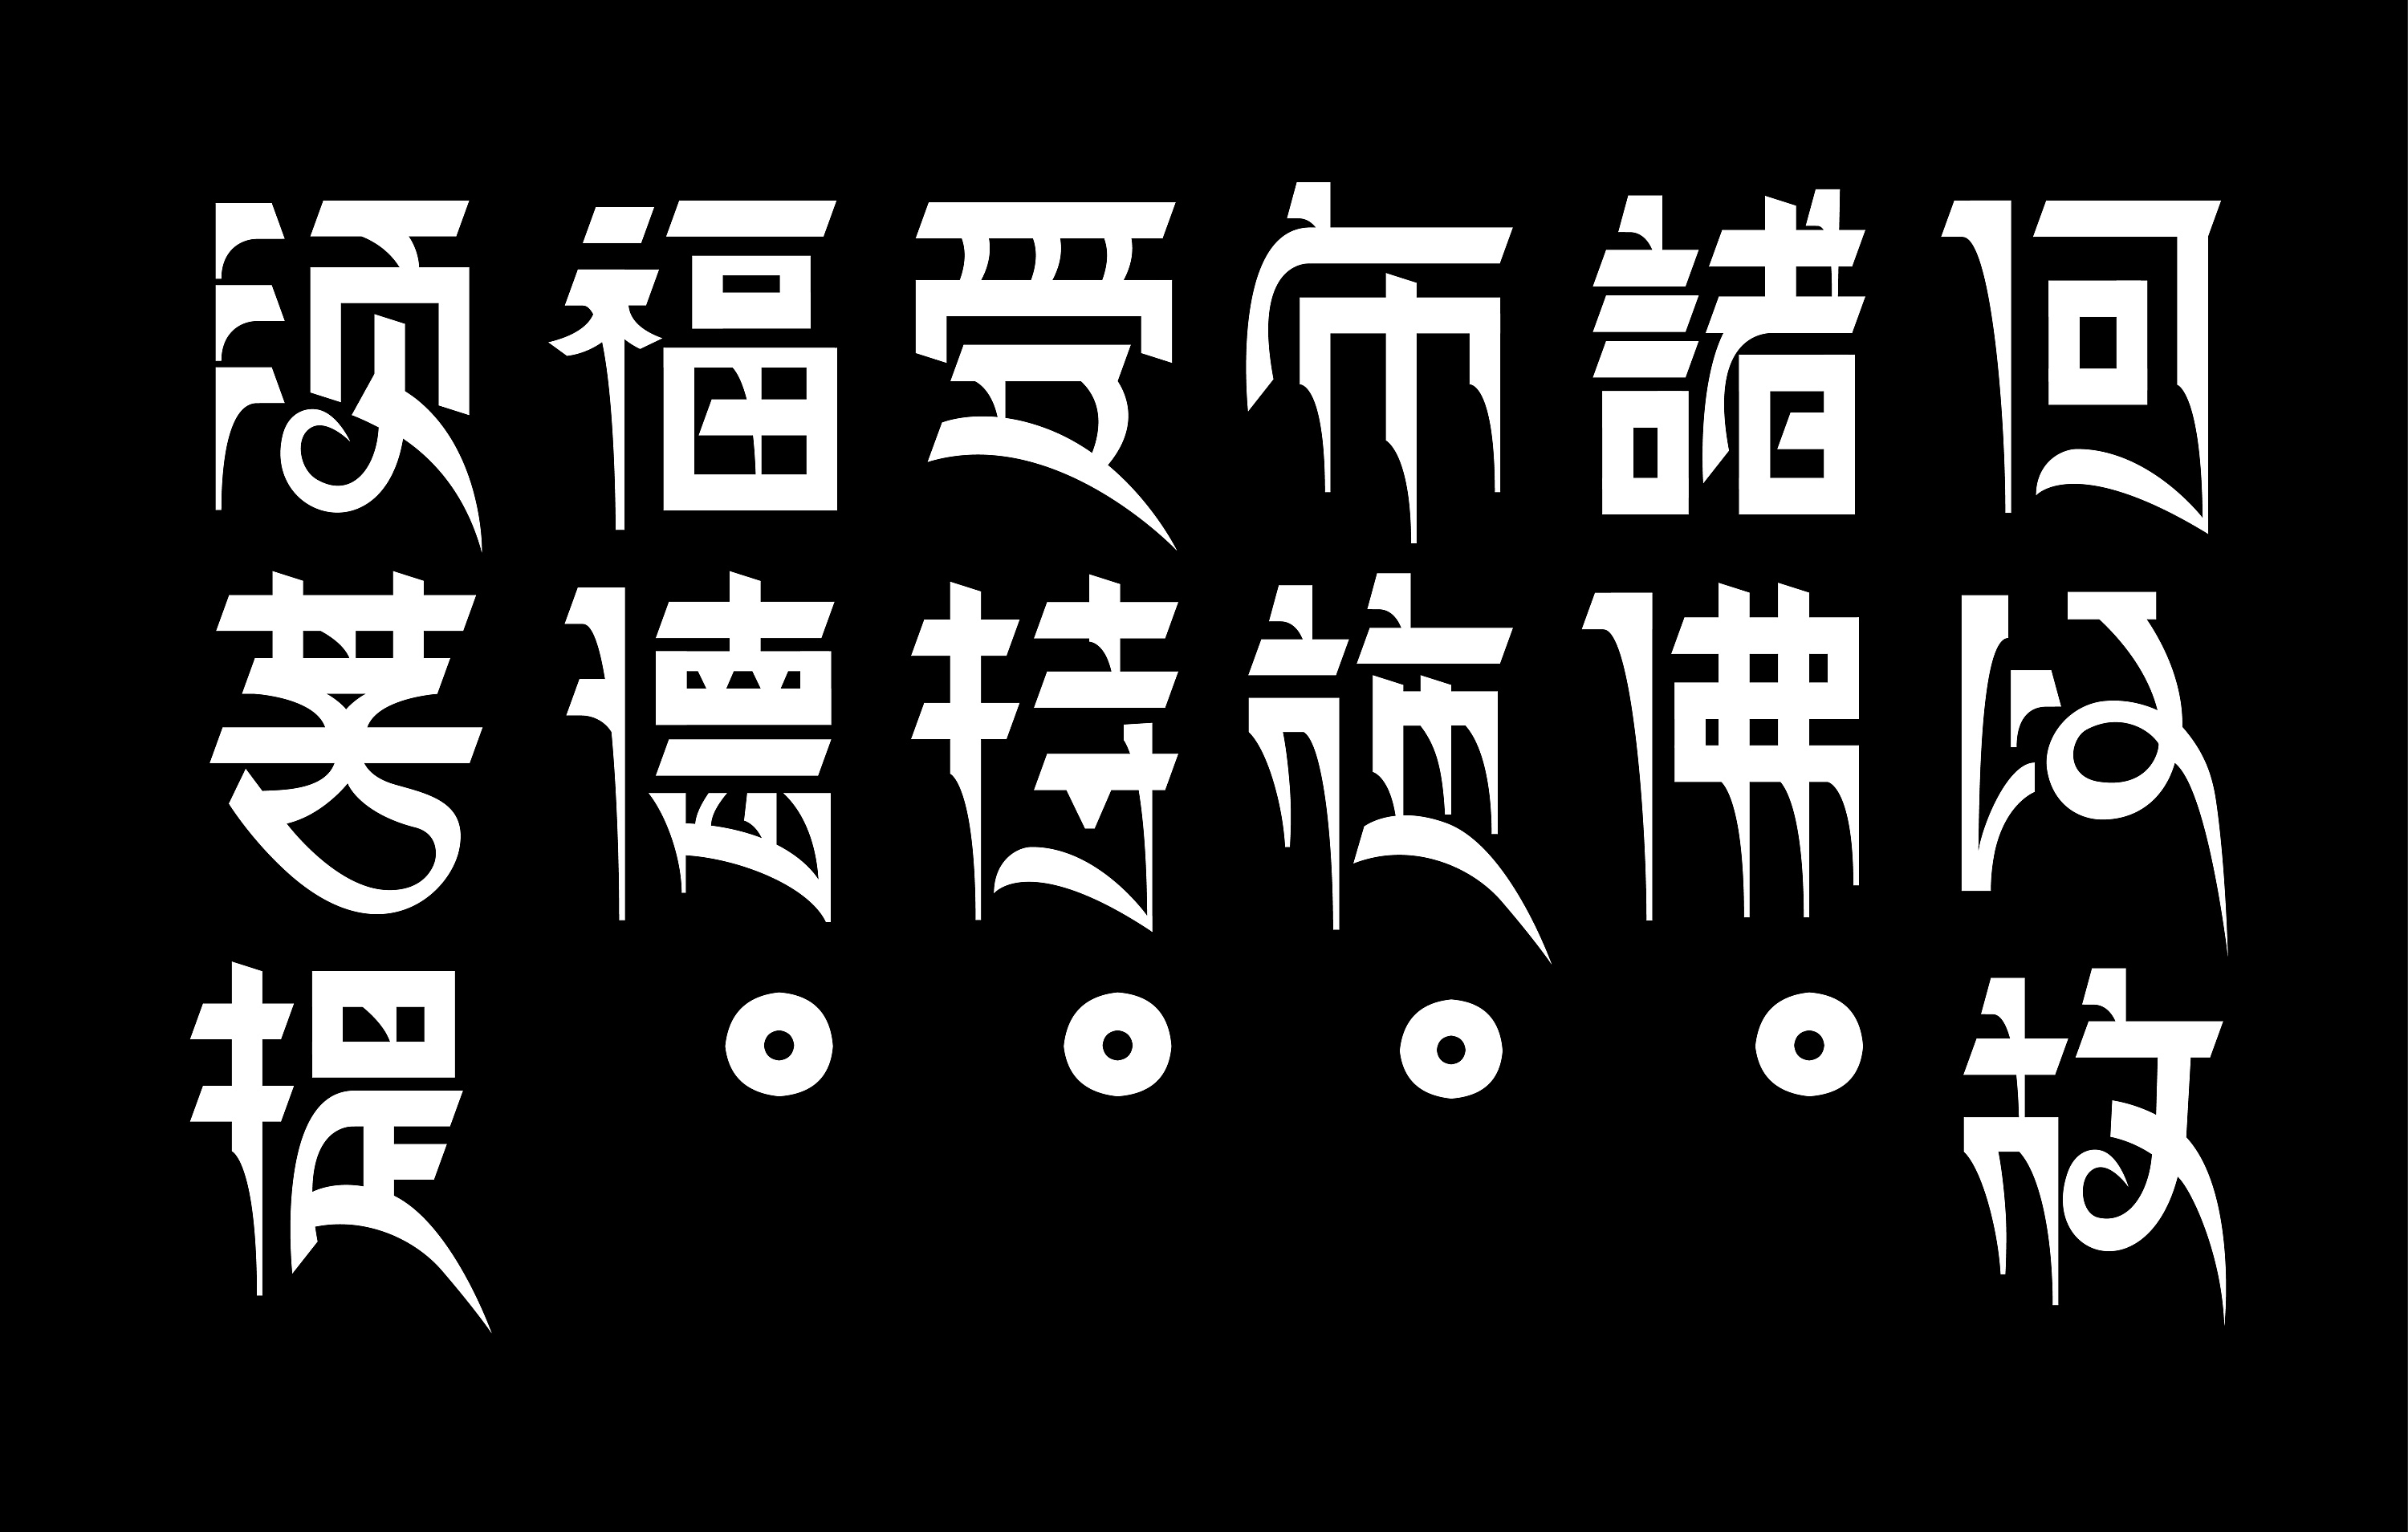 摘选《金刚经》藏文字体设计